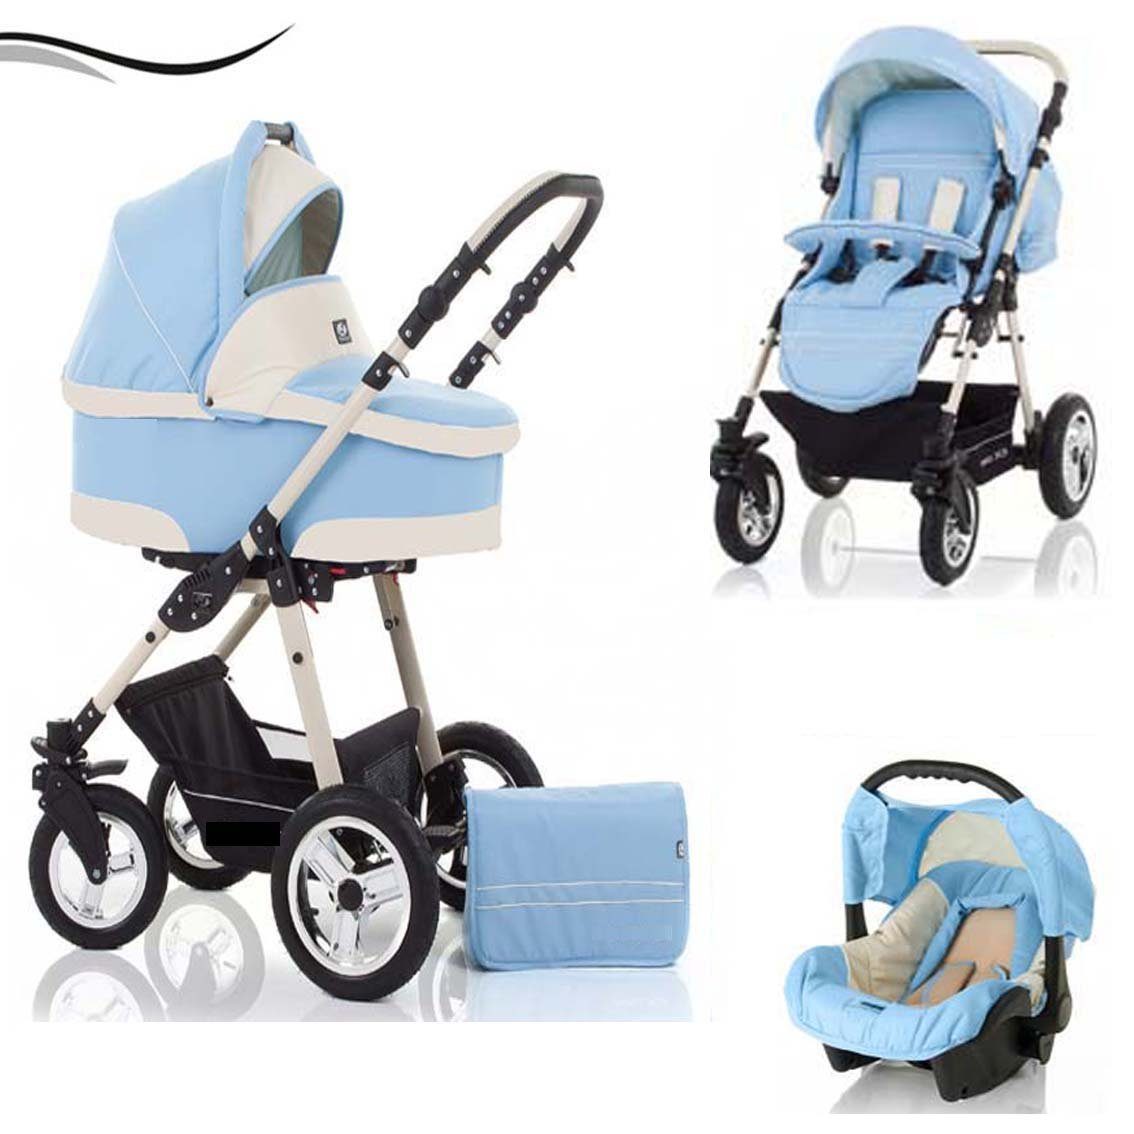 babies-on-wheels Kombi-Kinderwagen City Star 3 in 1 inkl. Autositz - 16 Teile - von Geburt bis 4 Jahre in 16 Farben Hellblau-Creme